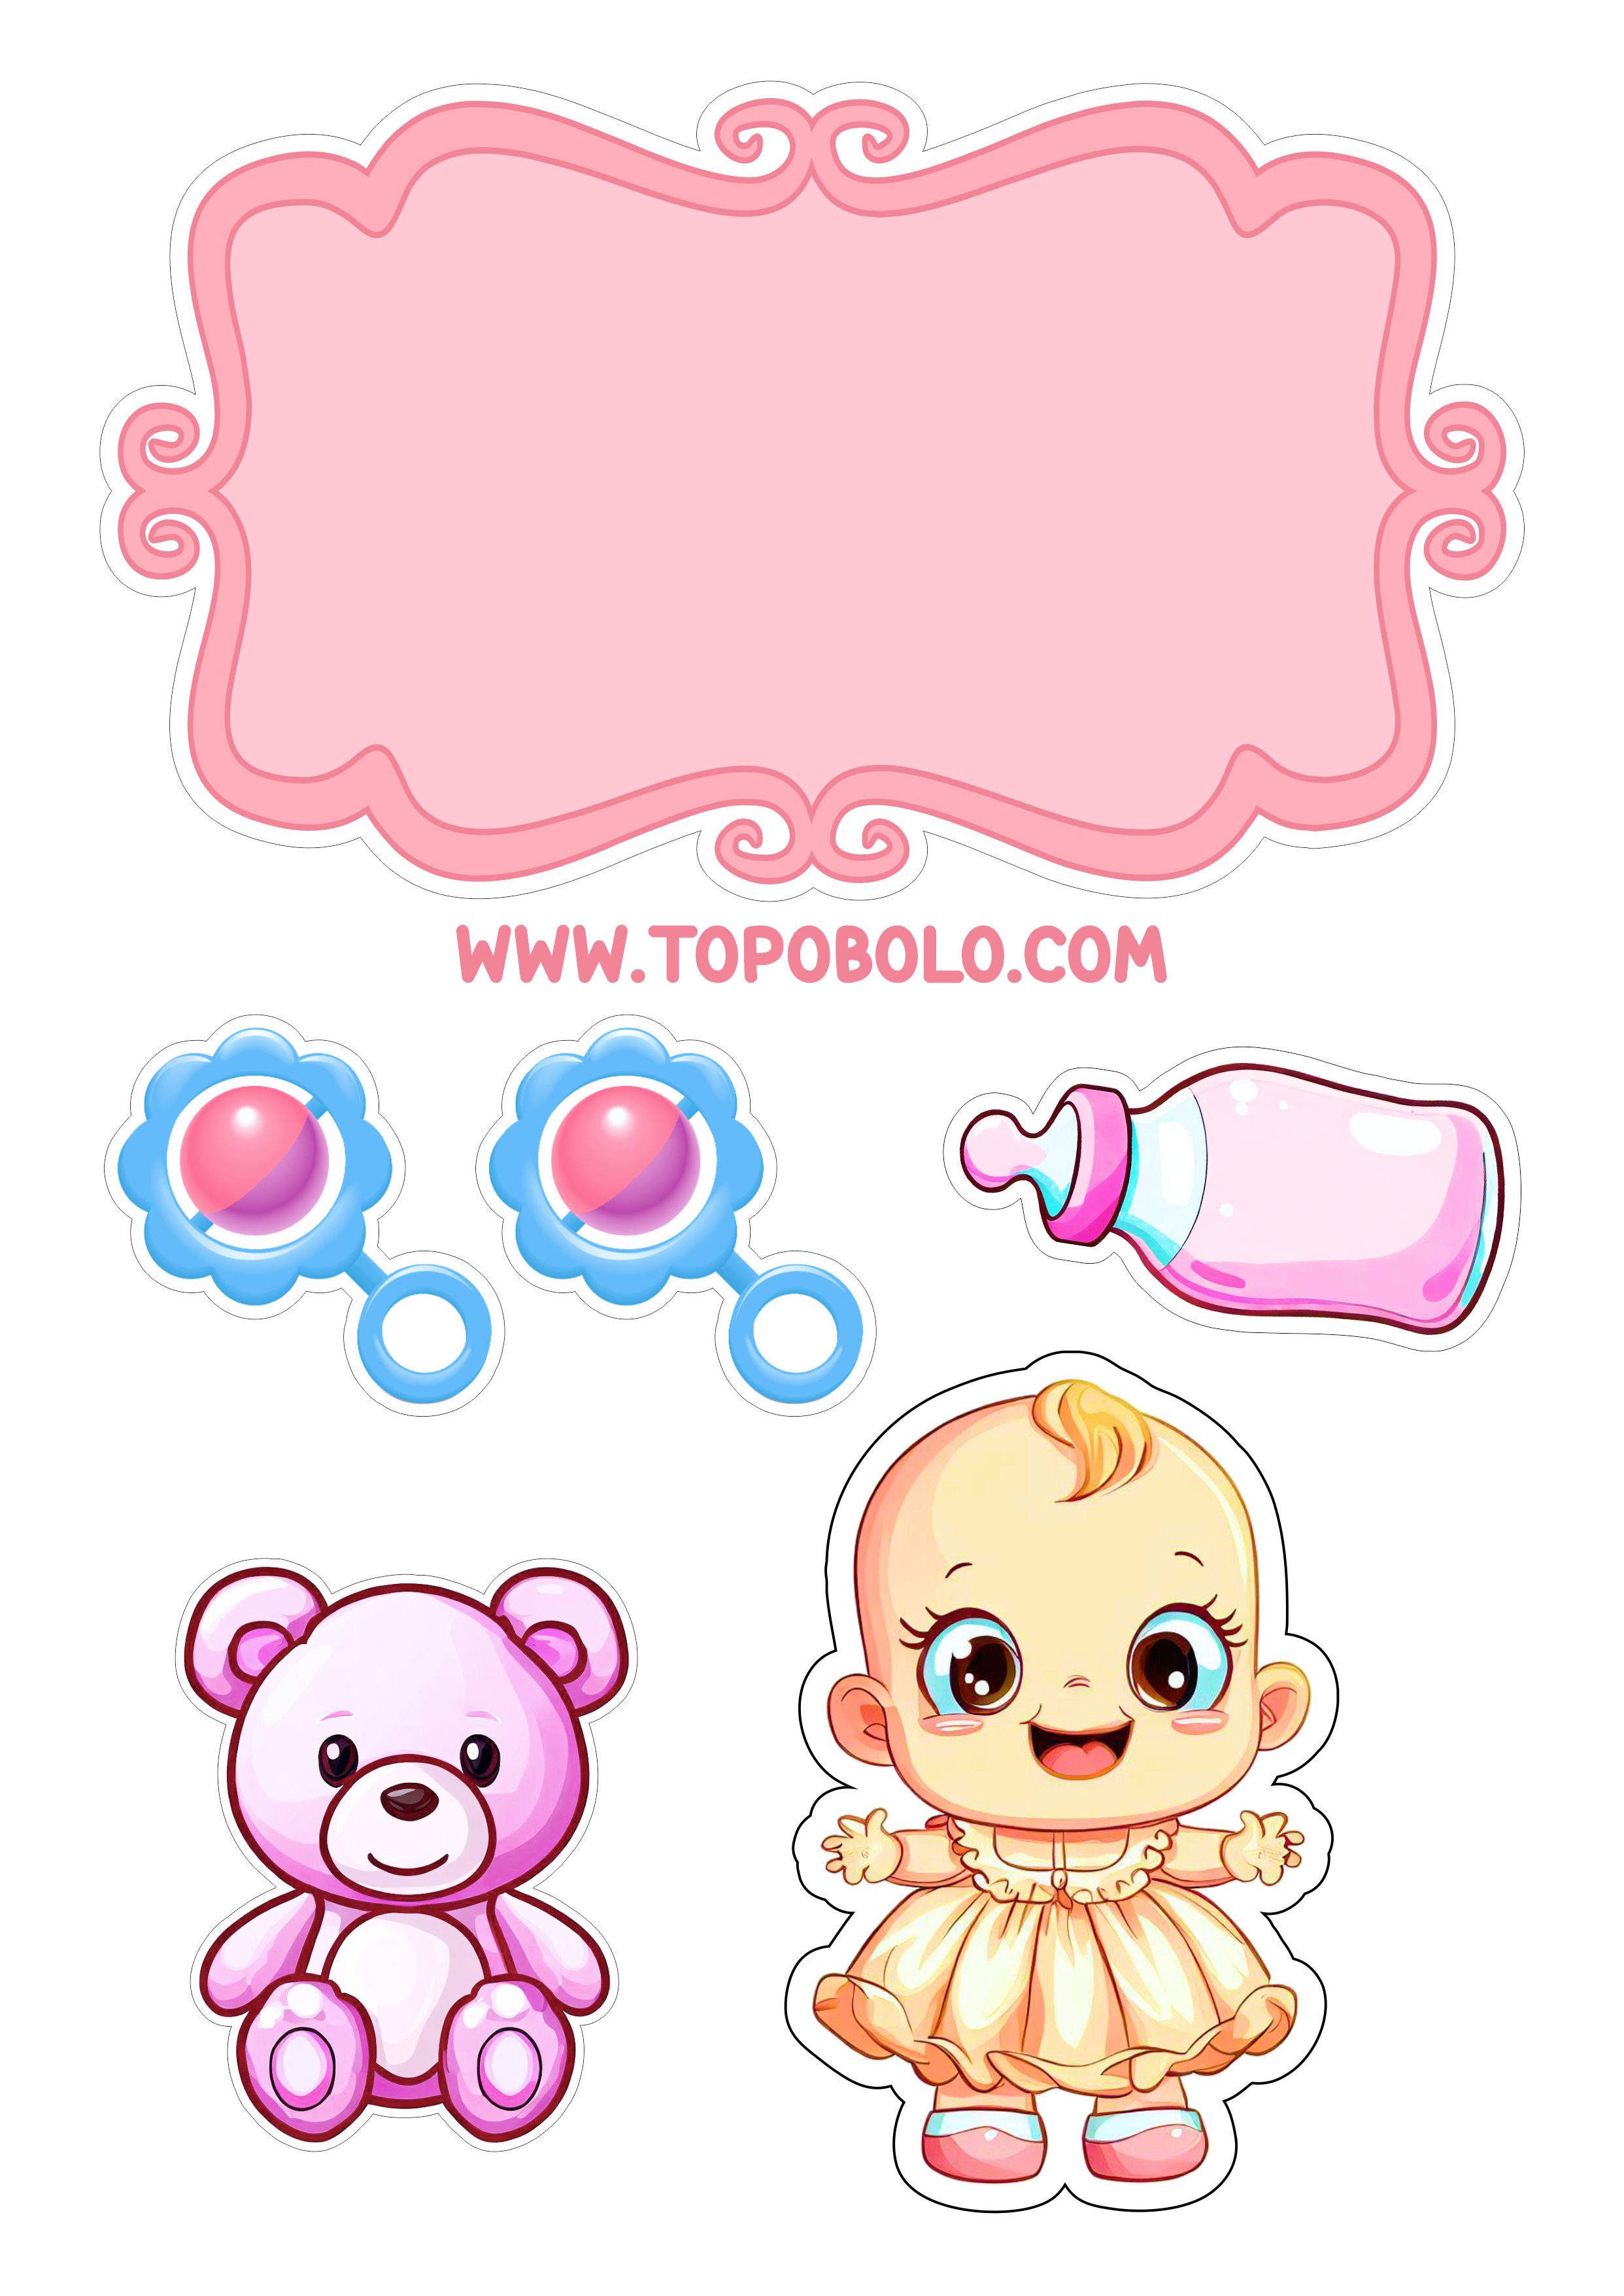 Mesversário menina topo de bolo para imprimir chá de bebê rosa artes gráficas mamadeiras ursinho de pelúcia png image